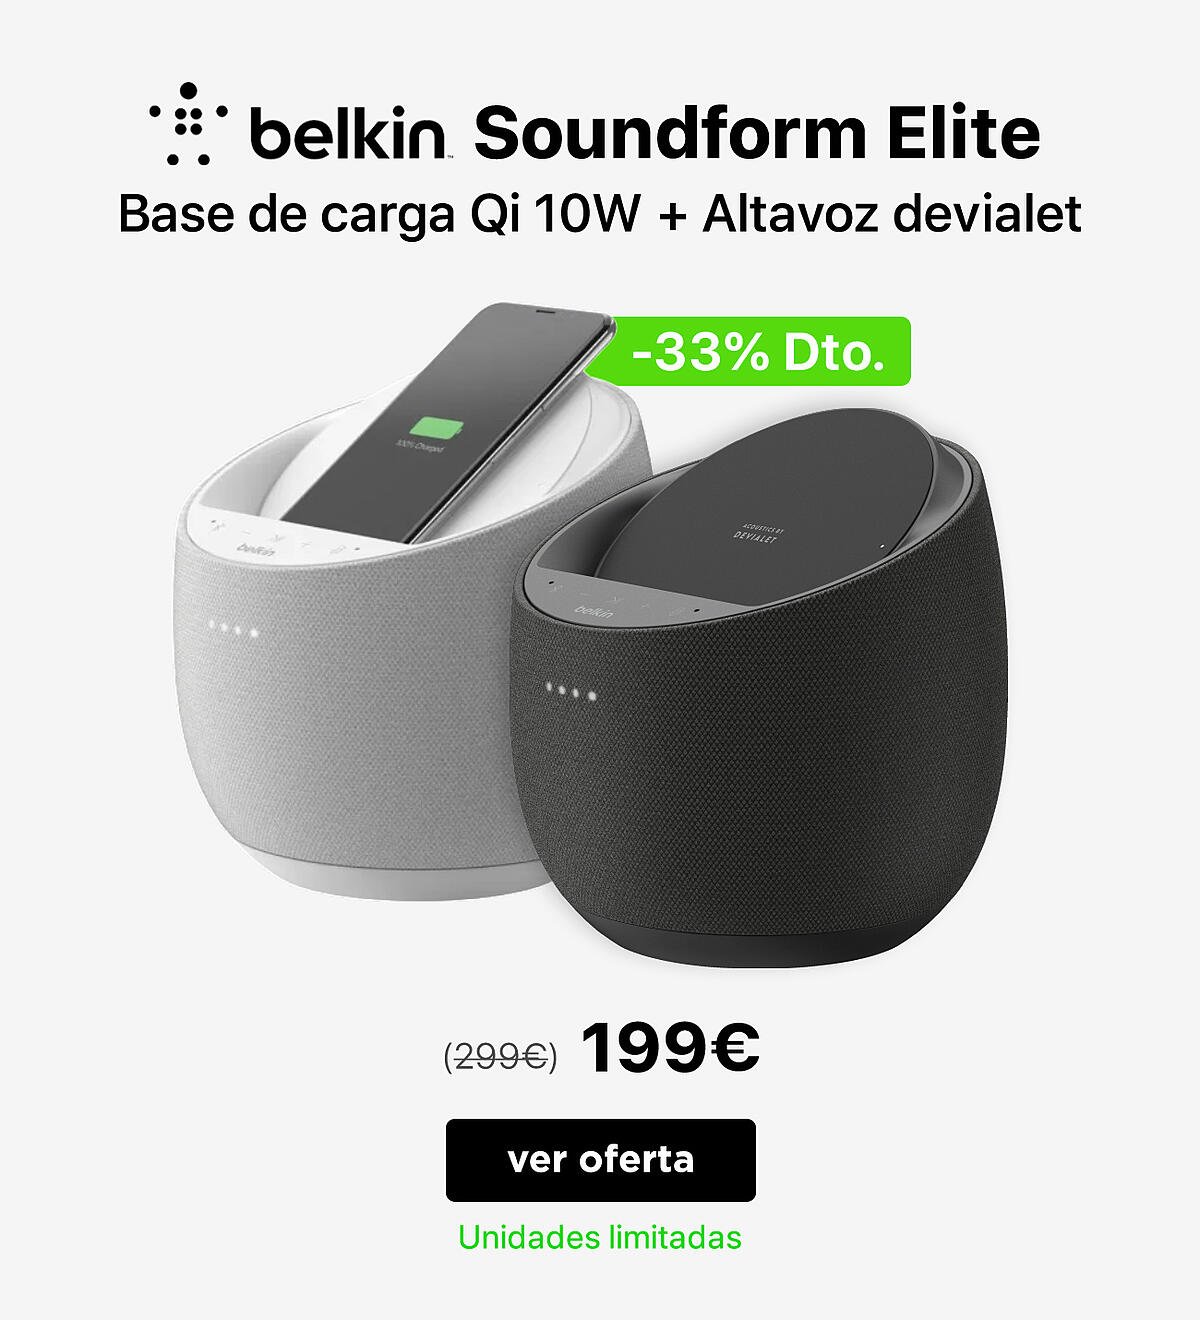 Belkin soundform elite